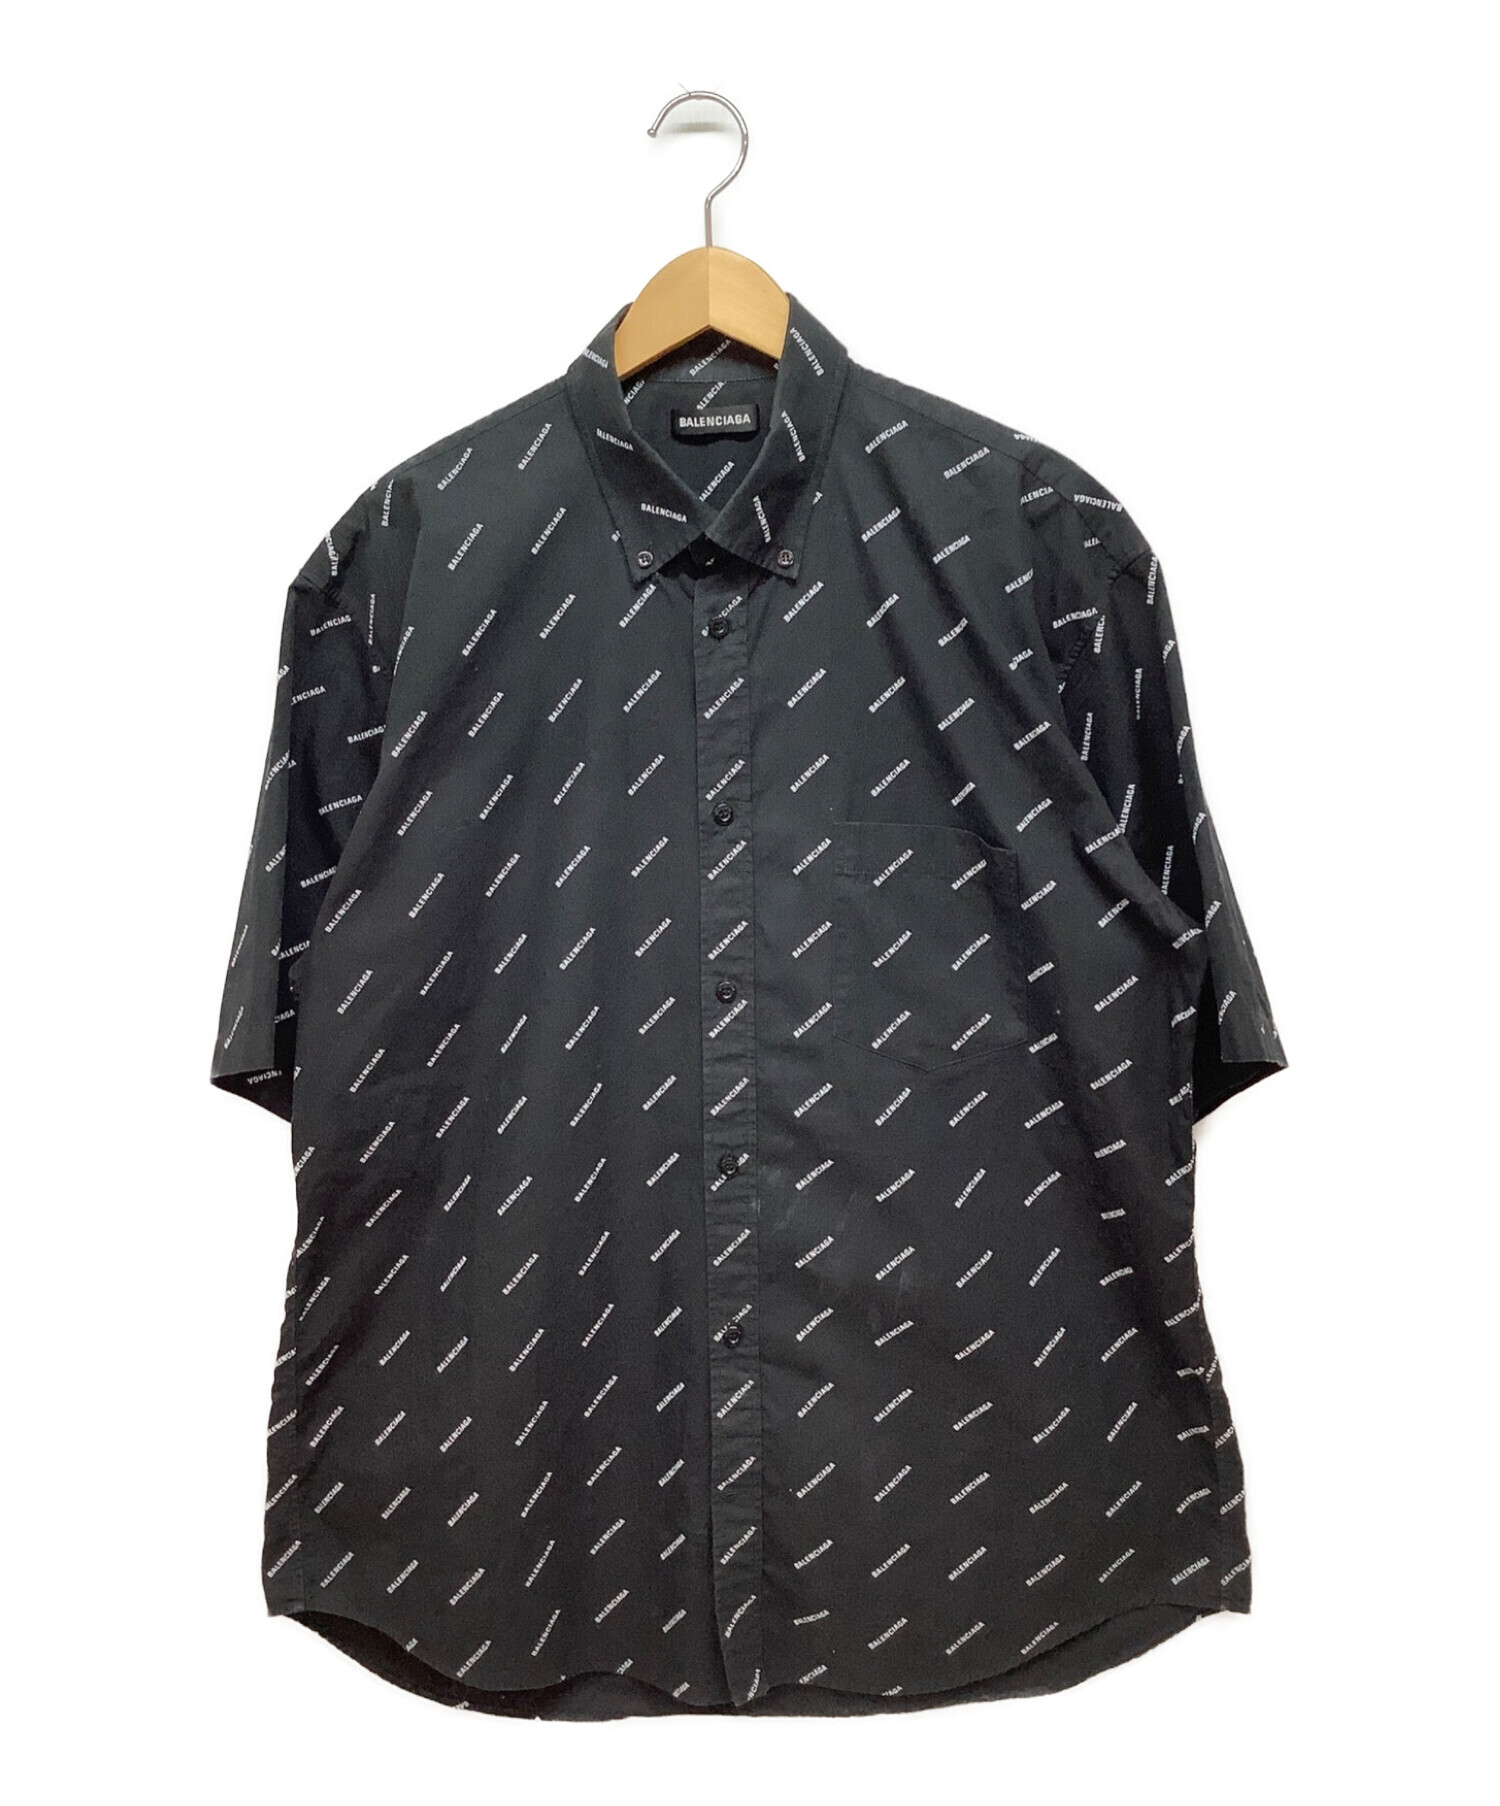 BALENCIAGA (バレンシアガ) 半袖シャツ ブラック サイズ:39